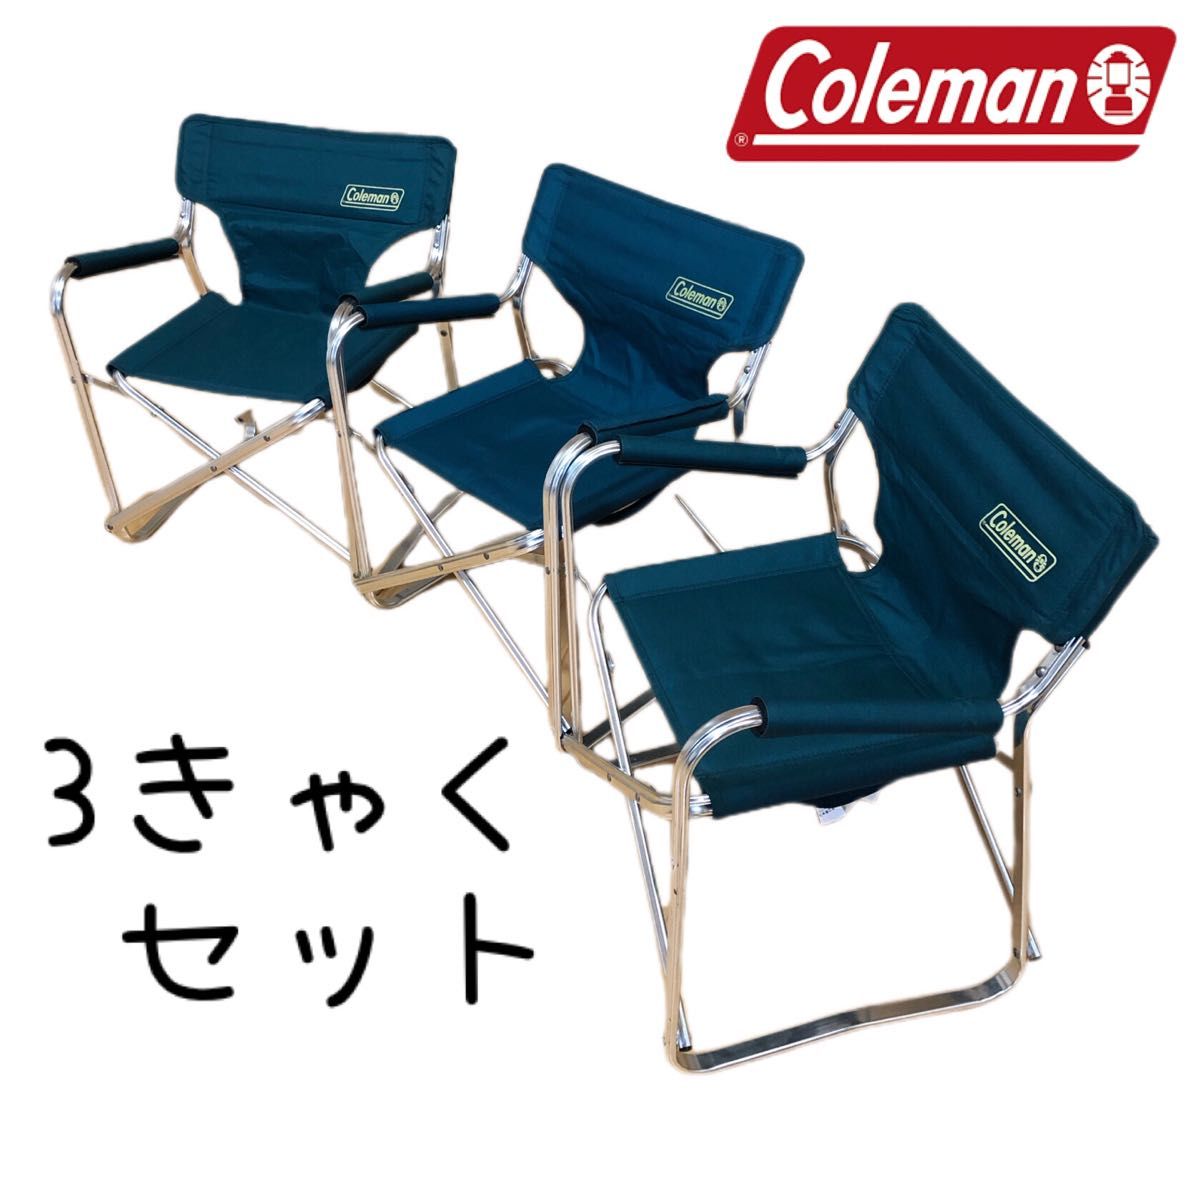 コールマン ミニキャプテンチェア 折りたたみチェア 椅子 折りたたみ キャプテンチェア  デッキチェア Coleman